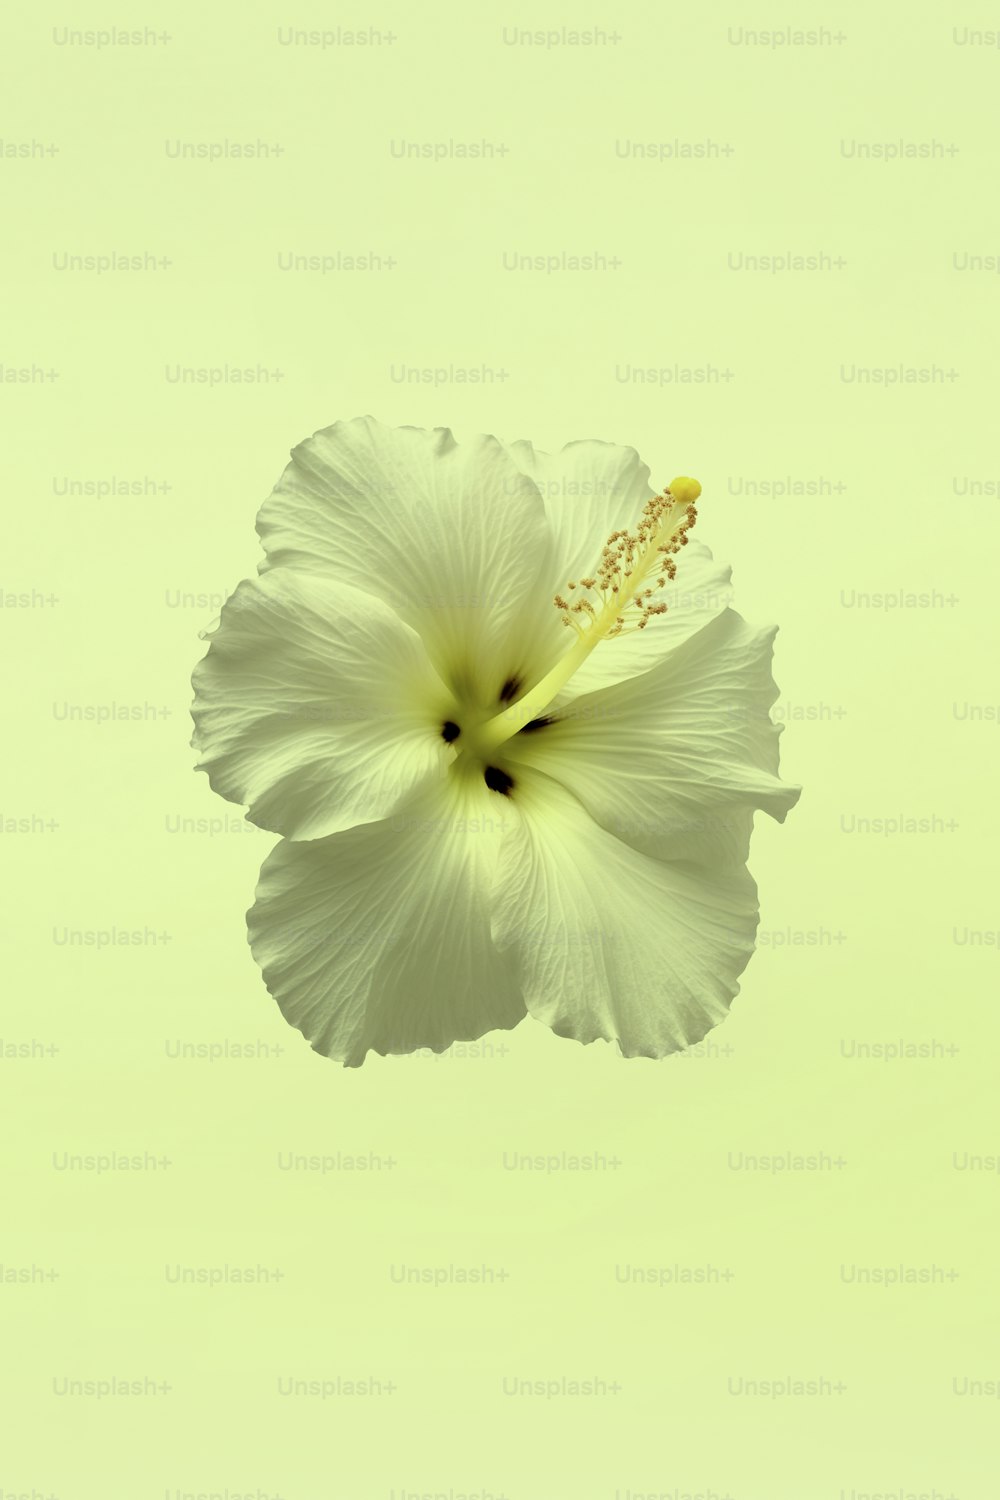 uma flor branca com um centro amarelo no ar